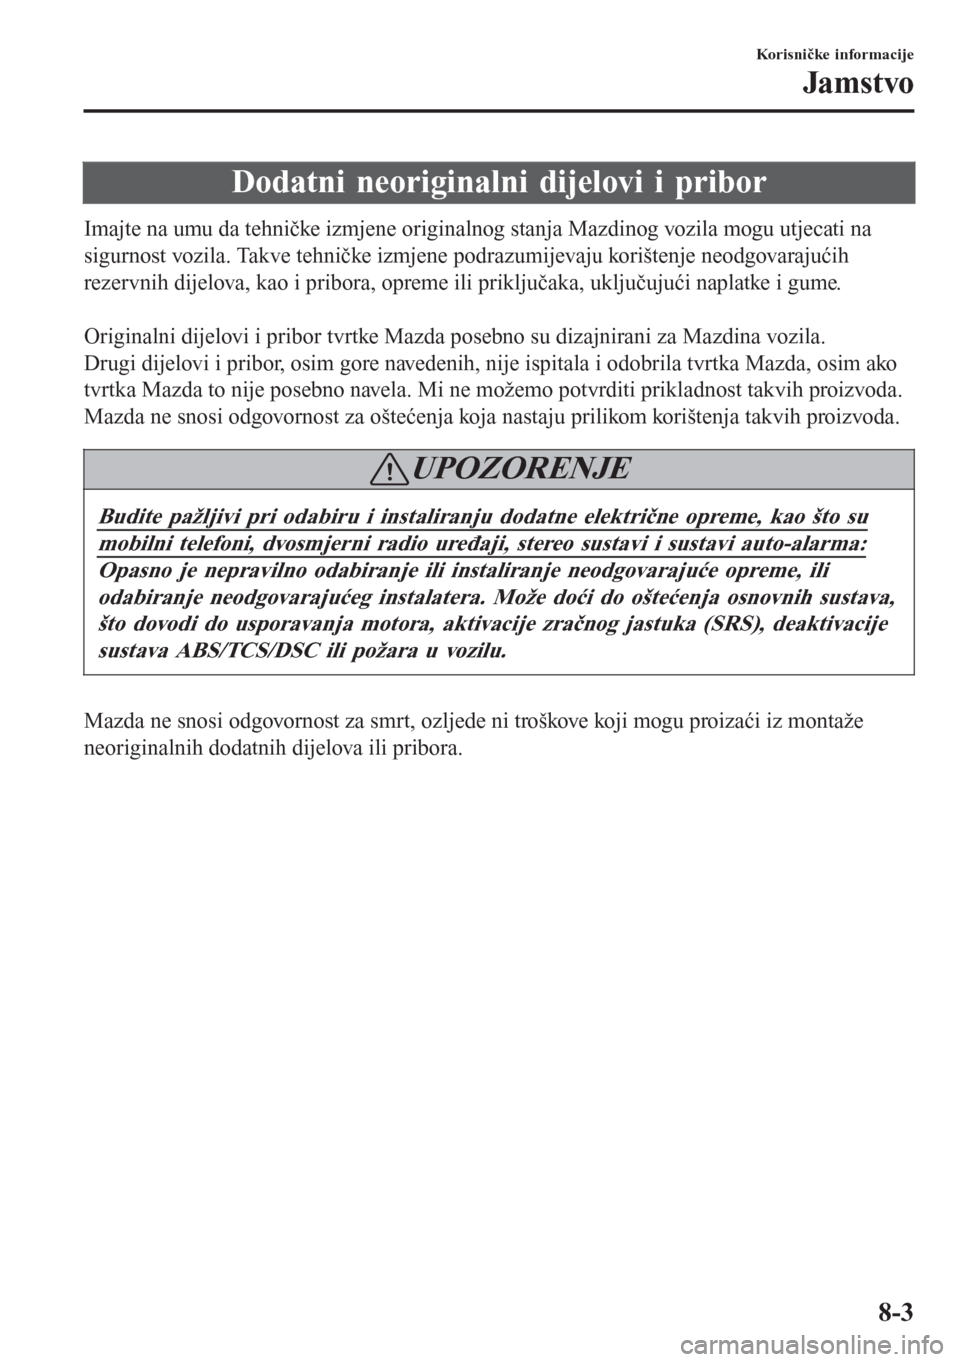 MAZDA MODEL CX-3 2016  Upute za uporabu (in Croatian) Dodatni neoriginalni dijelovi i pribor
Imajte na umu da tehničke izmjene originalnog stanja Mazdinog vozila mogu utjecati na
sigurnost vozila. Takve tehničke izmjene podrazumijevaju korištenje neod